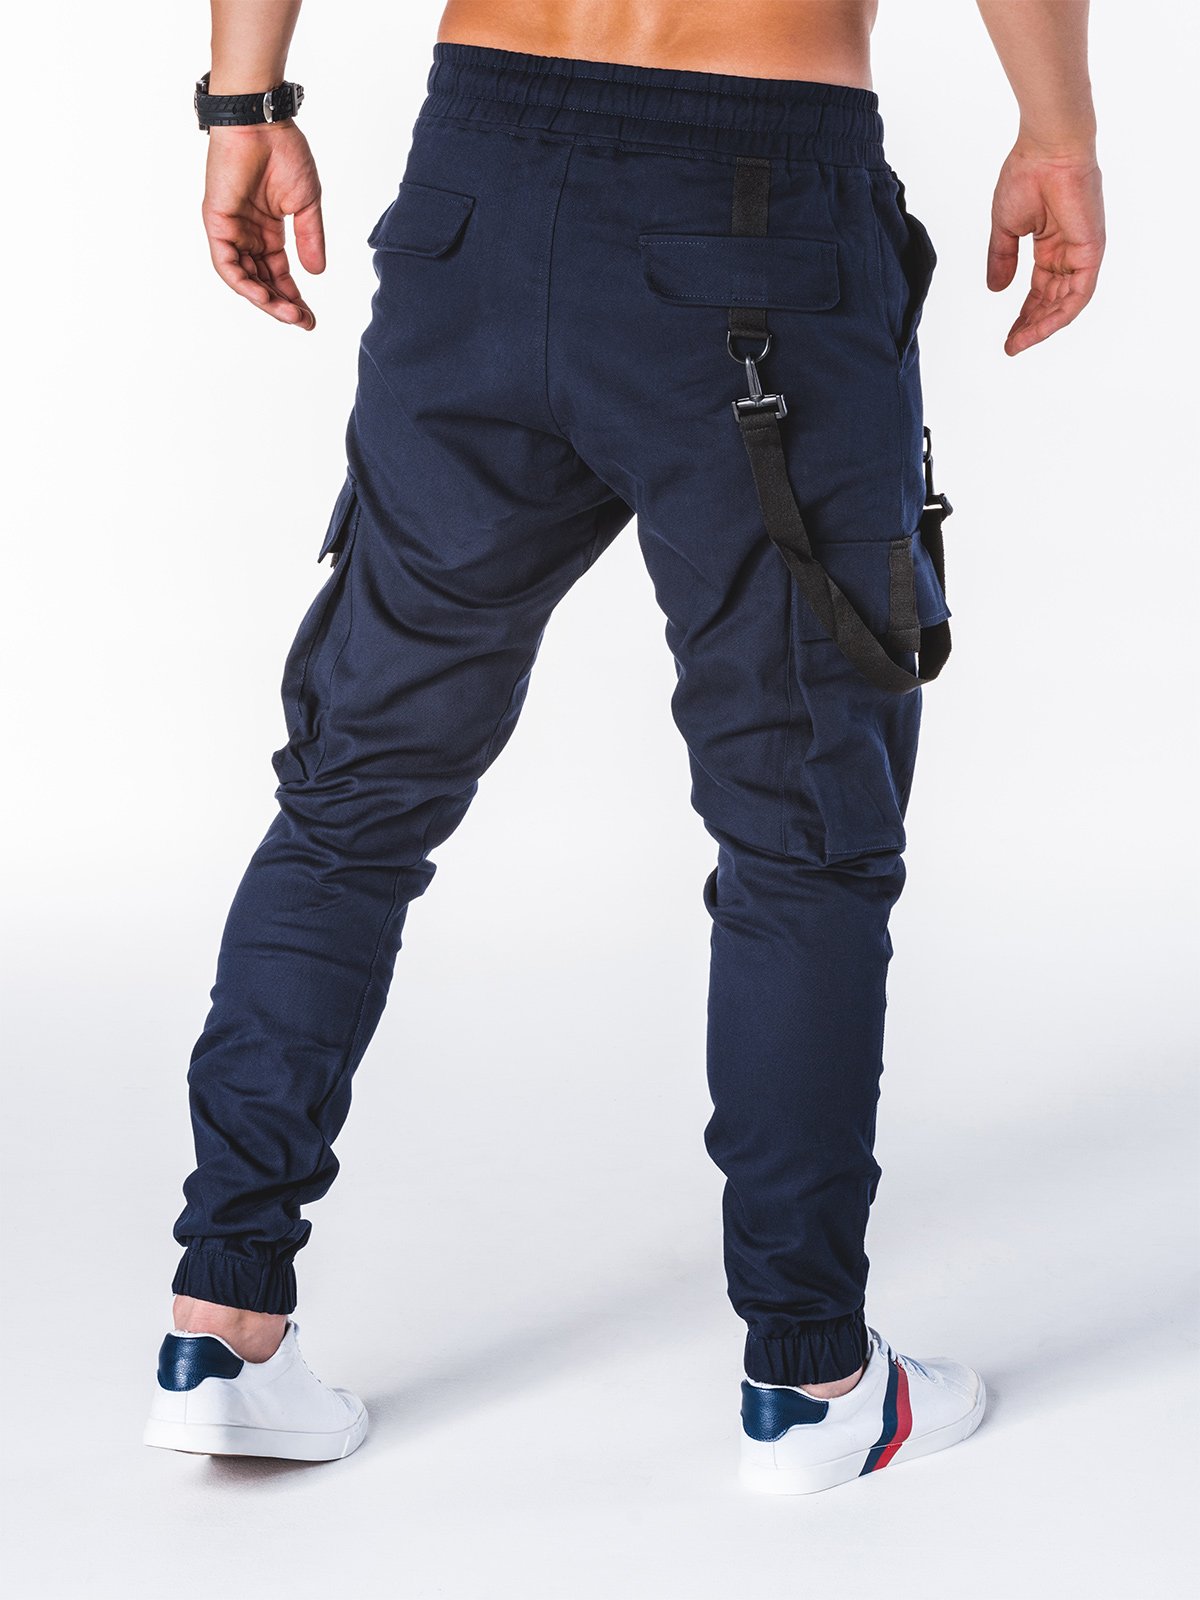 Men's pants joggers P716 - navy | MODONE wholesale - Clothing For Men